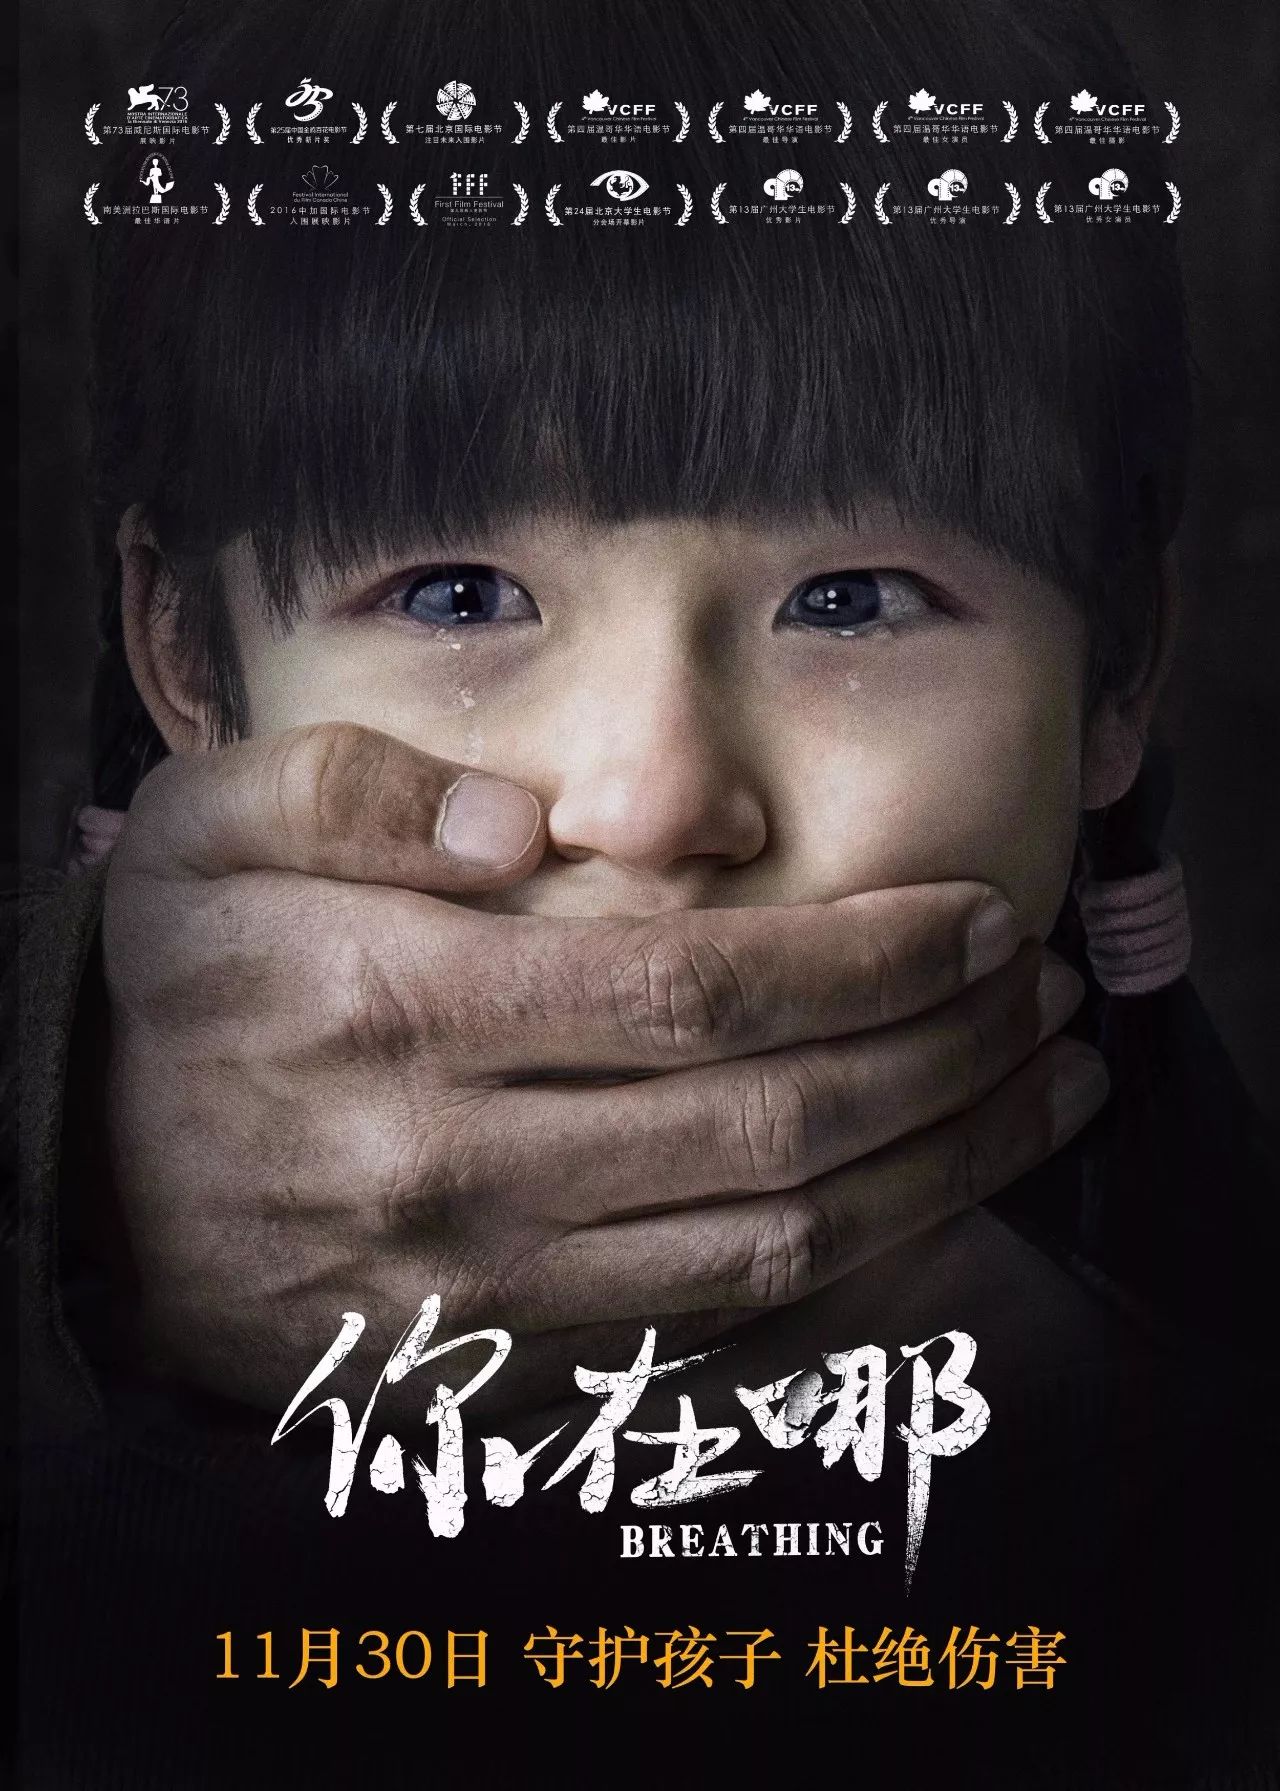 近日,将于11月30日上映的打拐犯罪电影《你在哪》在京举办首映礼